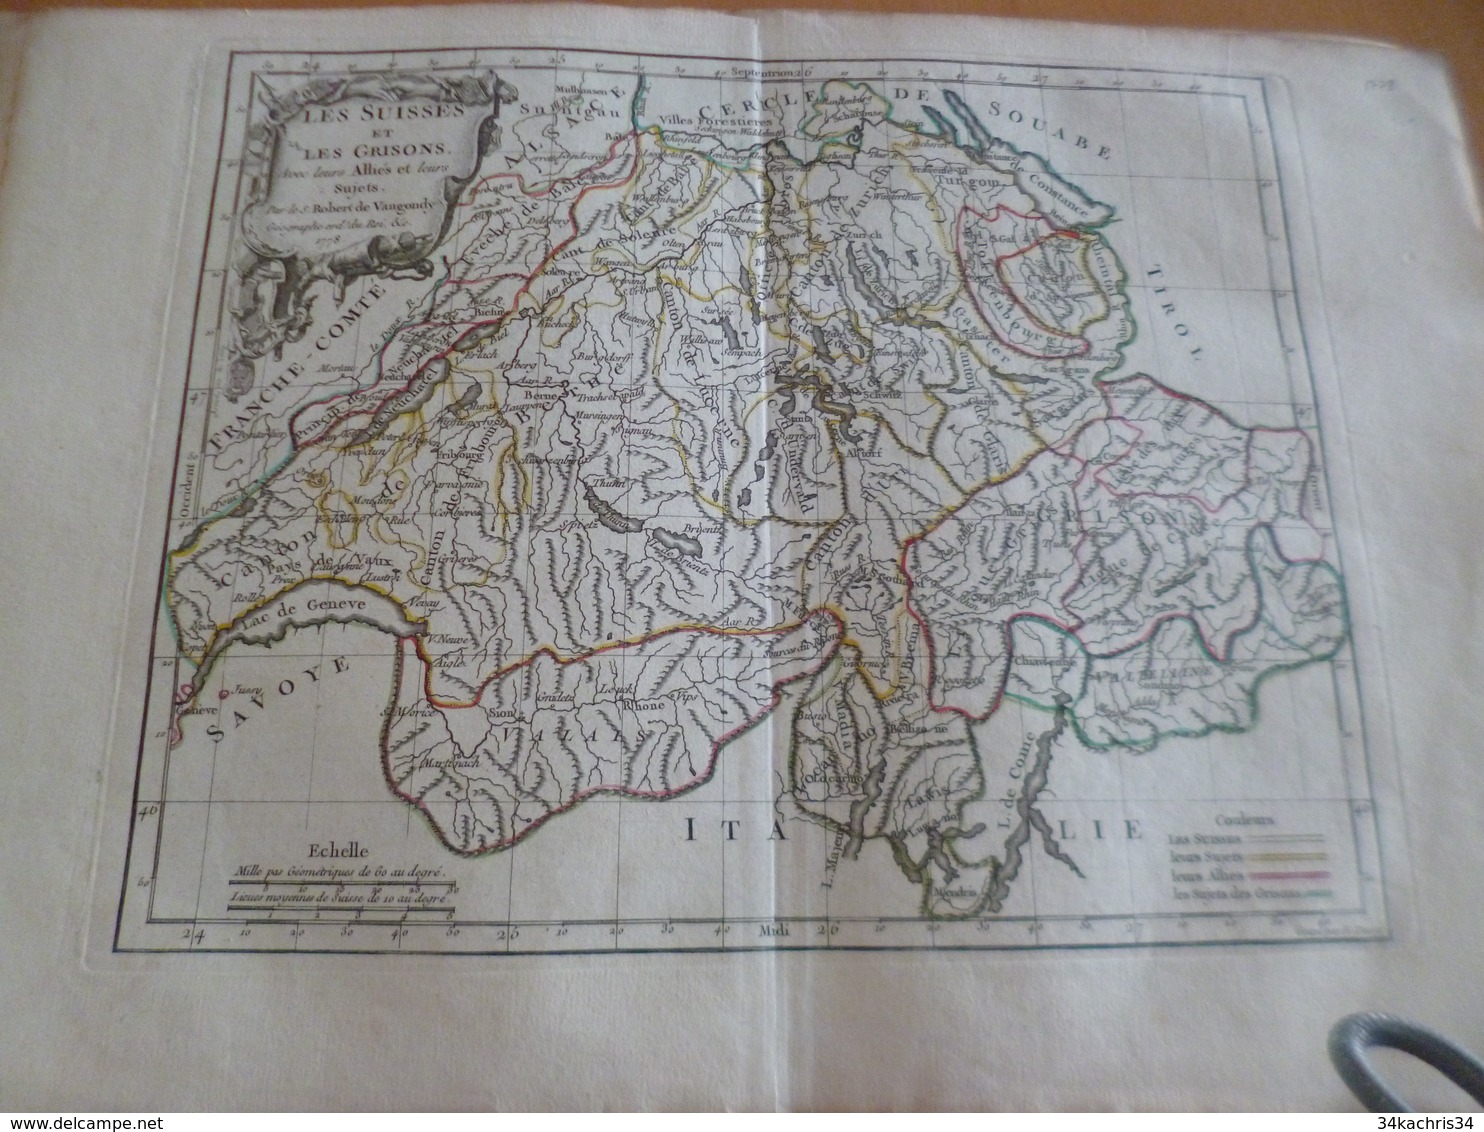 Carte Atlas Vagondy 1778 Gravée Par Dussy 40 X 29cm Mouillures Les Suisses Et Les Grisons Suisse - Mapas Geográficas